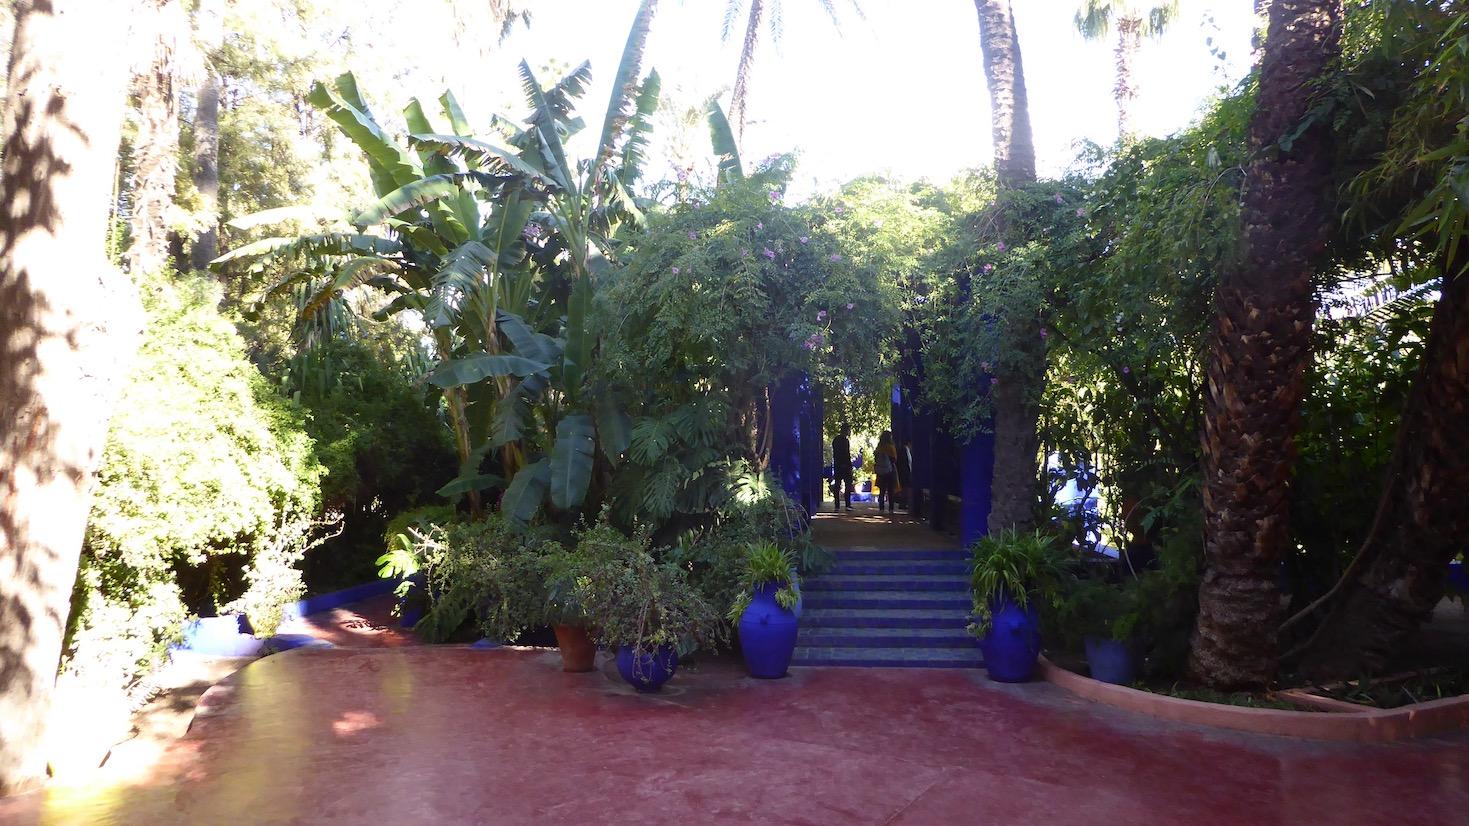 Le Jardin Majorelle in Marrakech